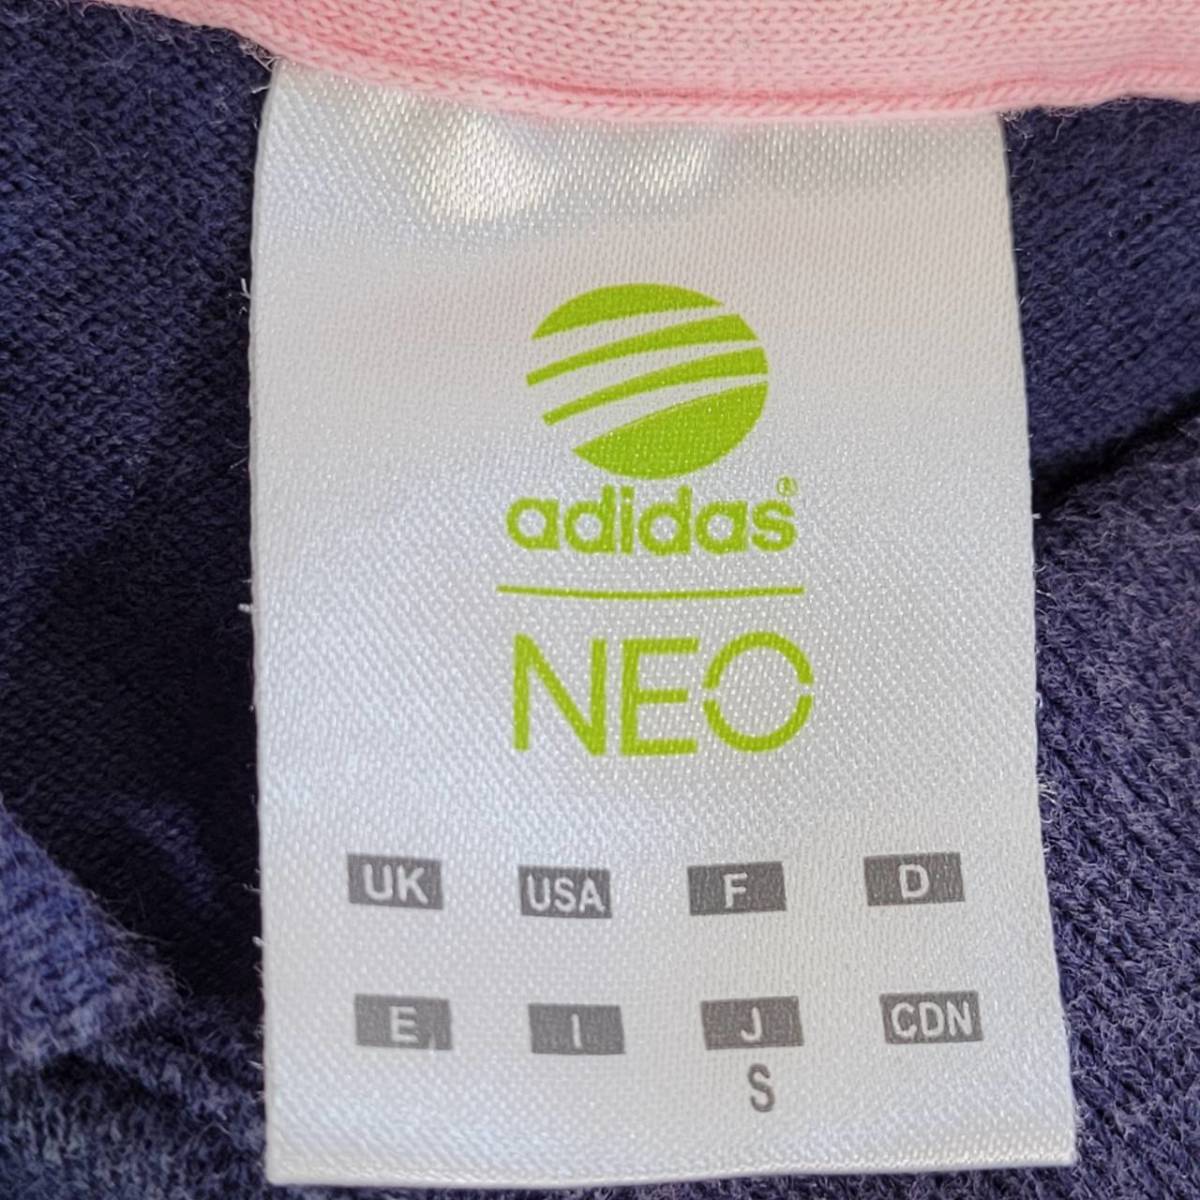 レディースS adidas 半袖ポロシャツ 紺 ネイビー カジュアル ブランドロゴ ピンクストライプ アディダス 【21574】